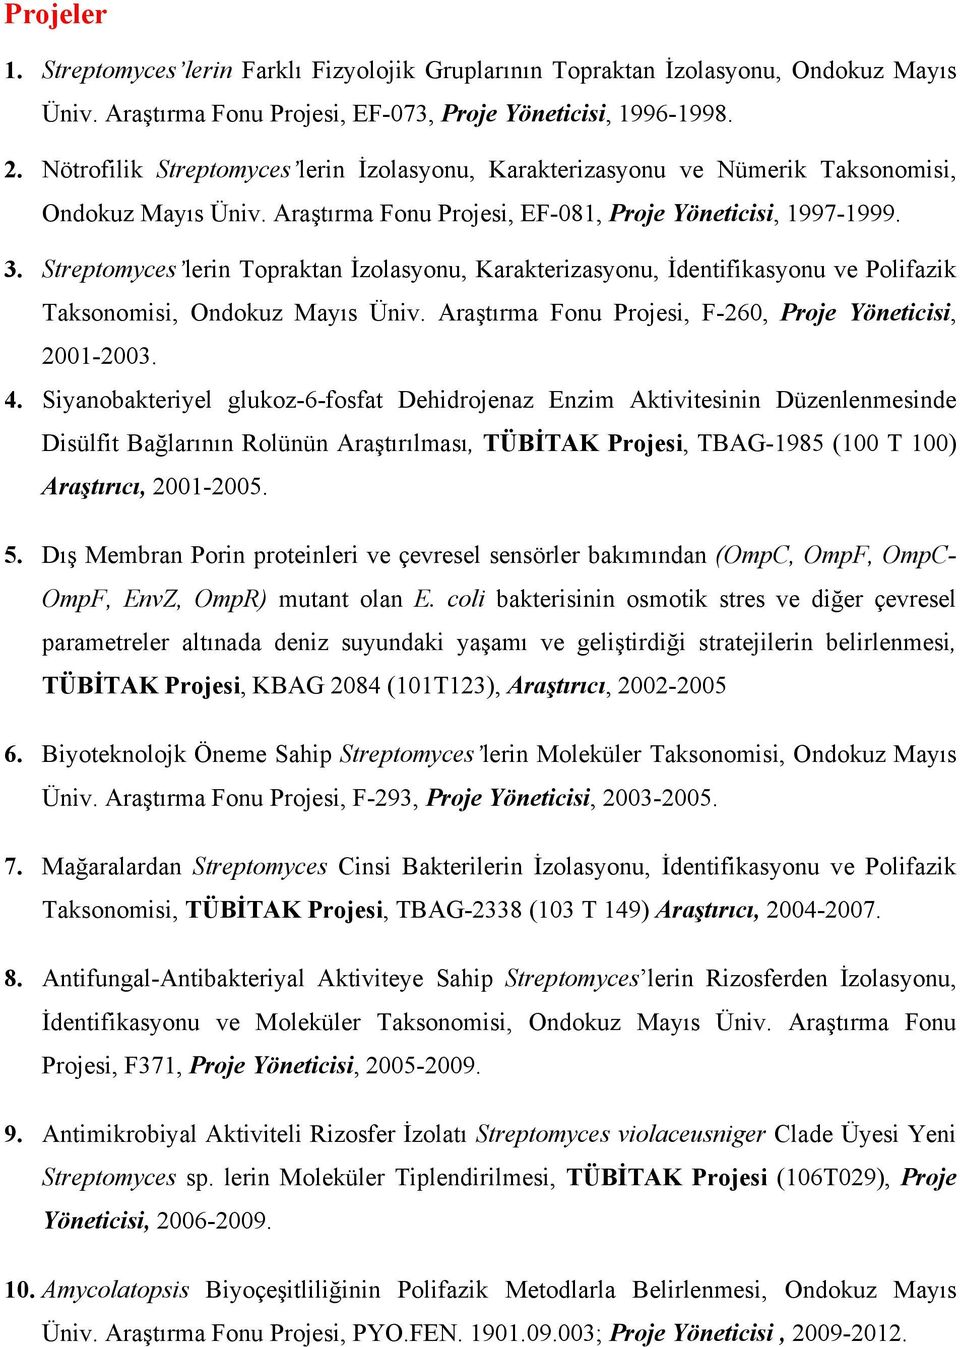 Streptomyces lerin Topraktan İzolasyonu, Karakterizasyonu, İdentifikasyonu ve Polifazik Taksonomisi, Ondokuz Mayıs Üniv. Araştırma Fonu Projesi, F-260, Proje Yöneticisi, 2001-2003. 4.